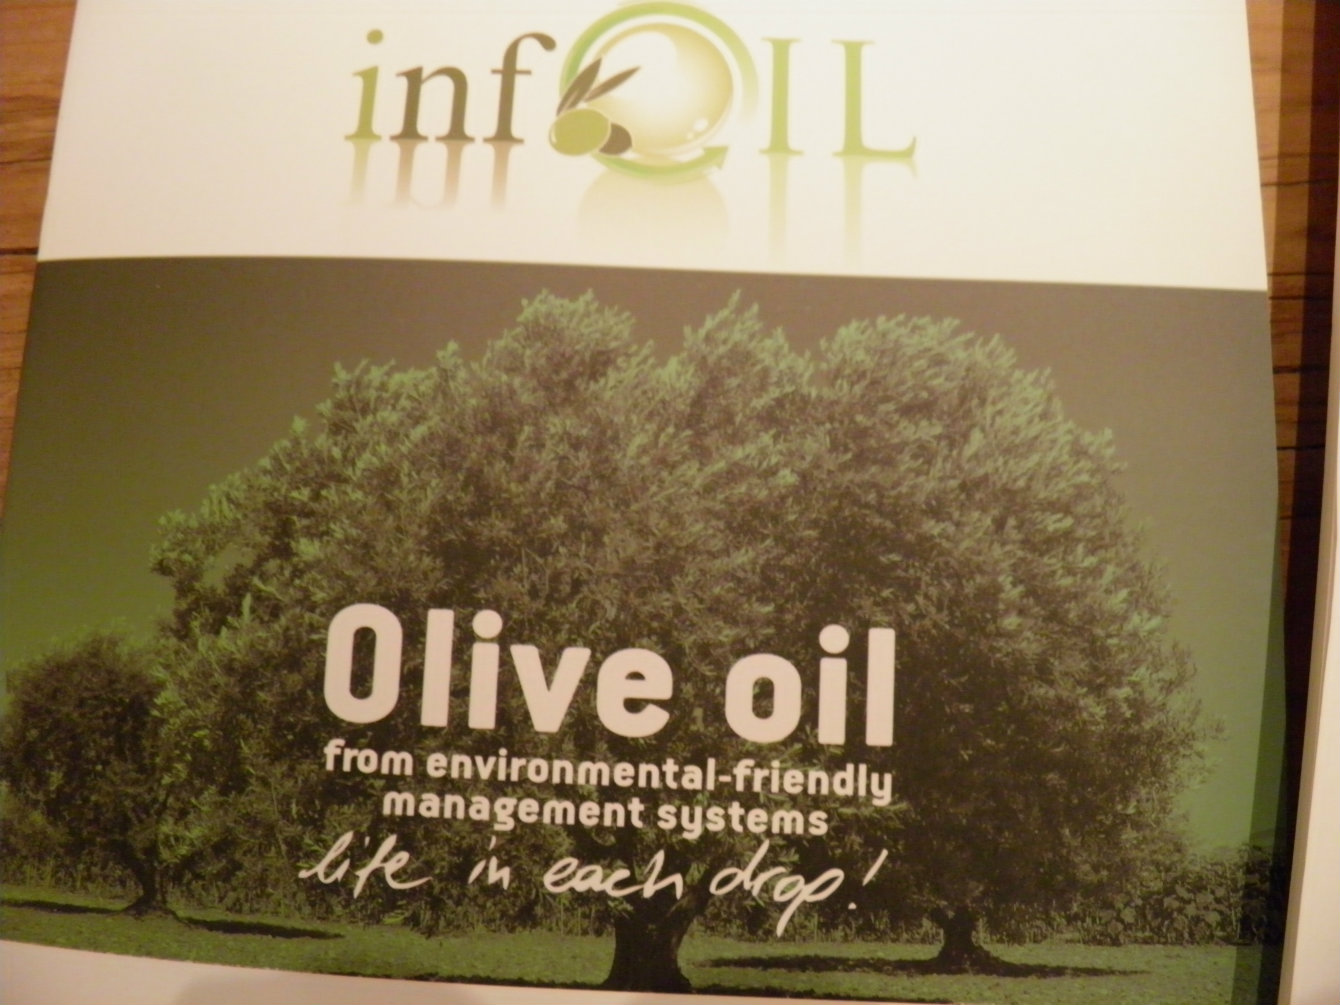 Olive oil taste seminar